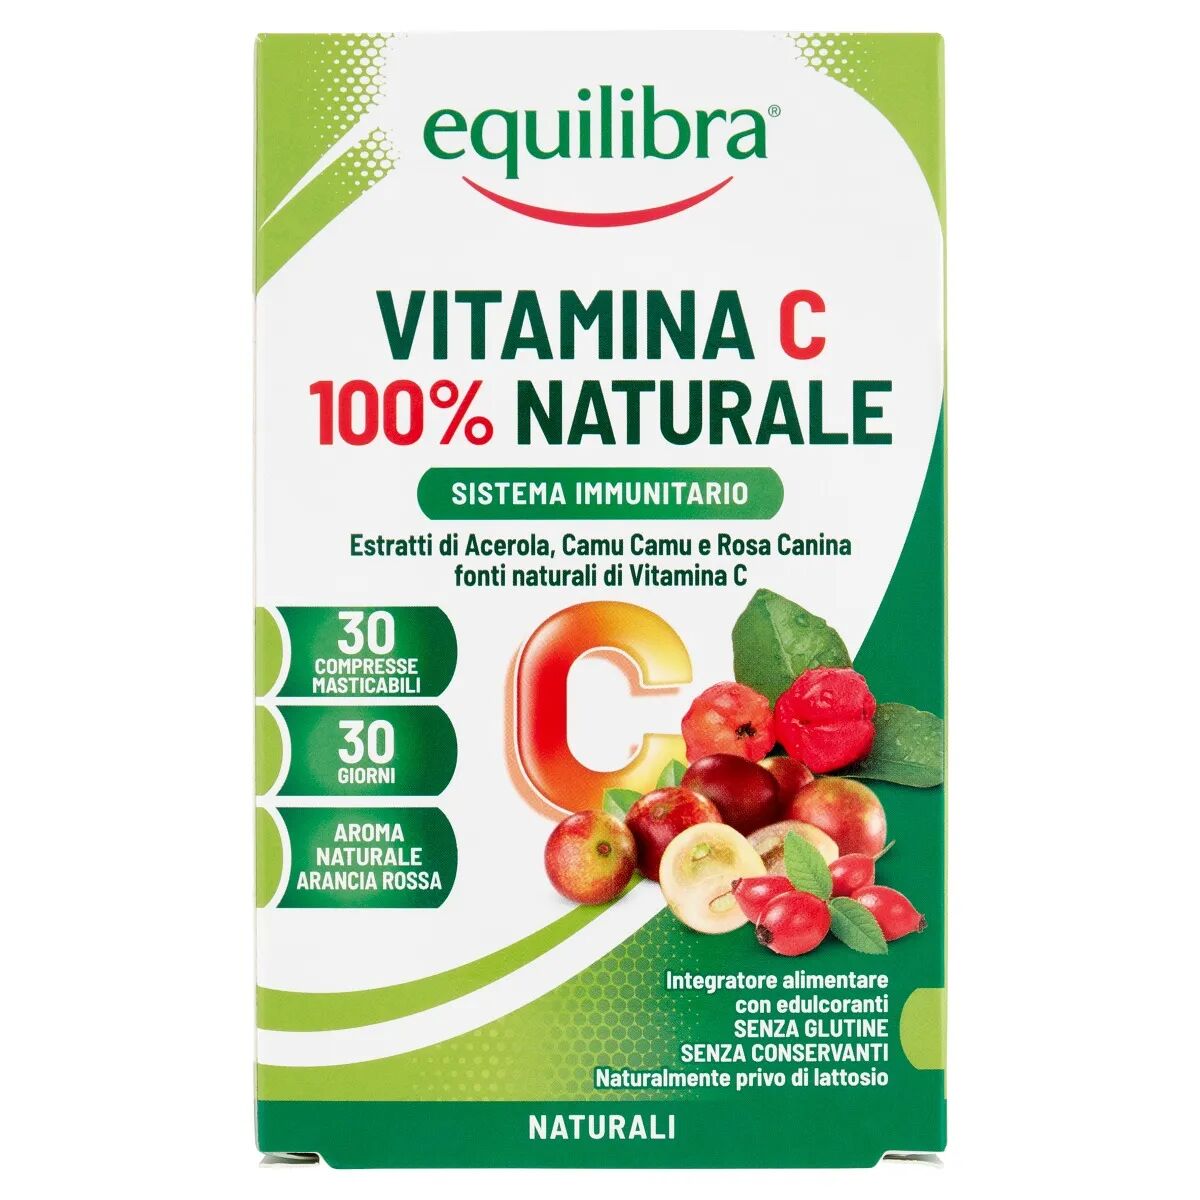 Equilibra Vitamina C 100% Naturale Integratore Antiossidante 30 Compresse Masticabili